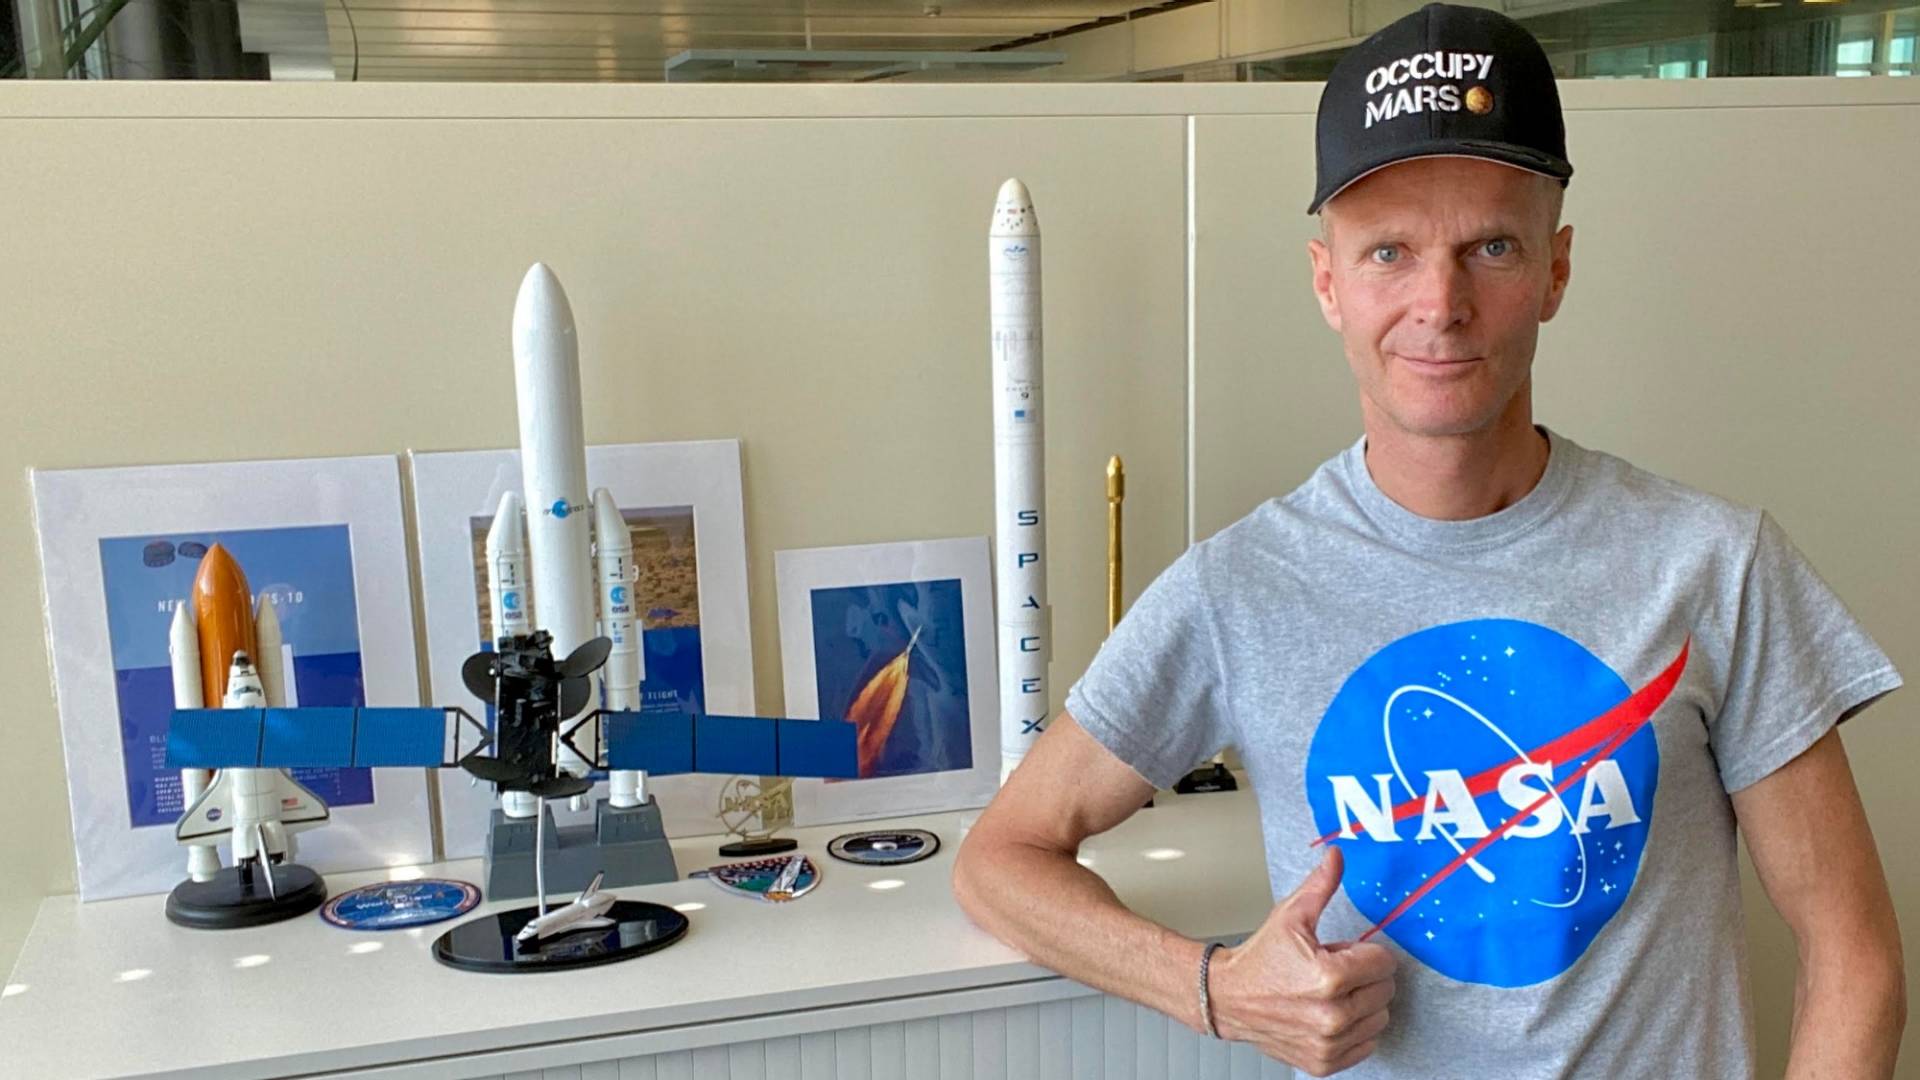 Un uomo con una T-shirt della NASA accanto all’armadio di un ufficio